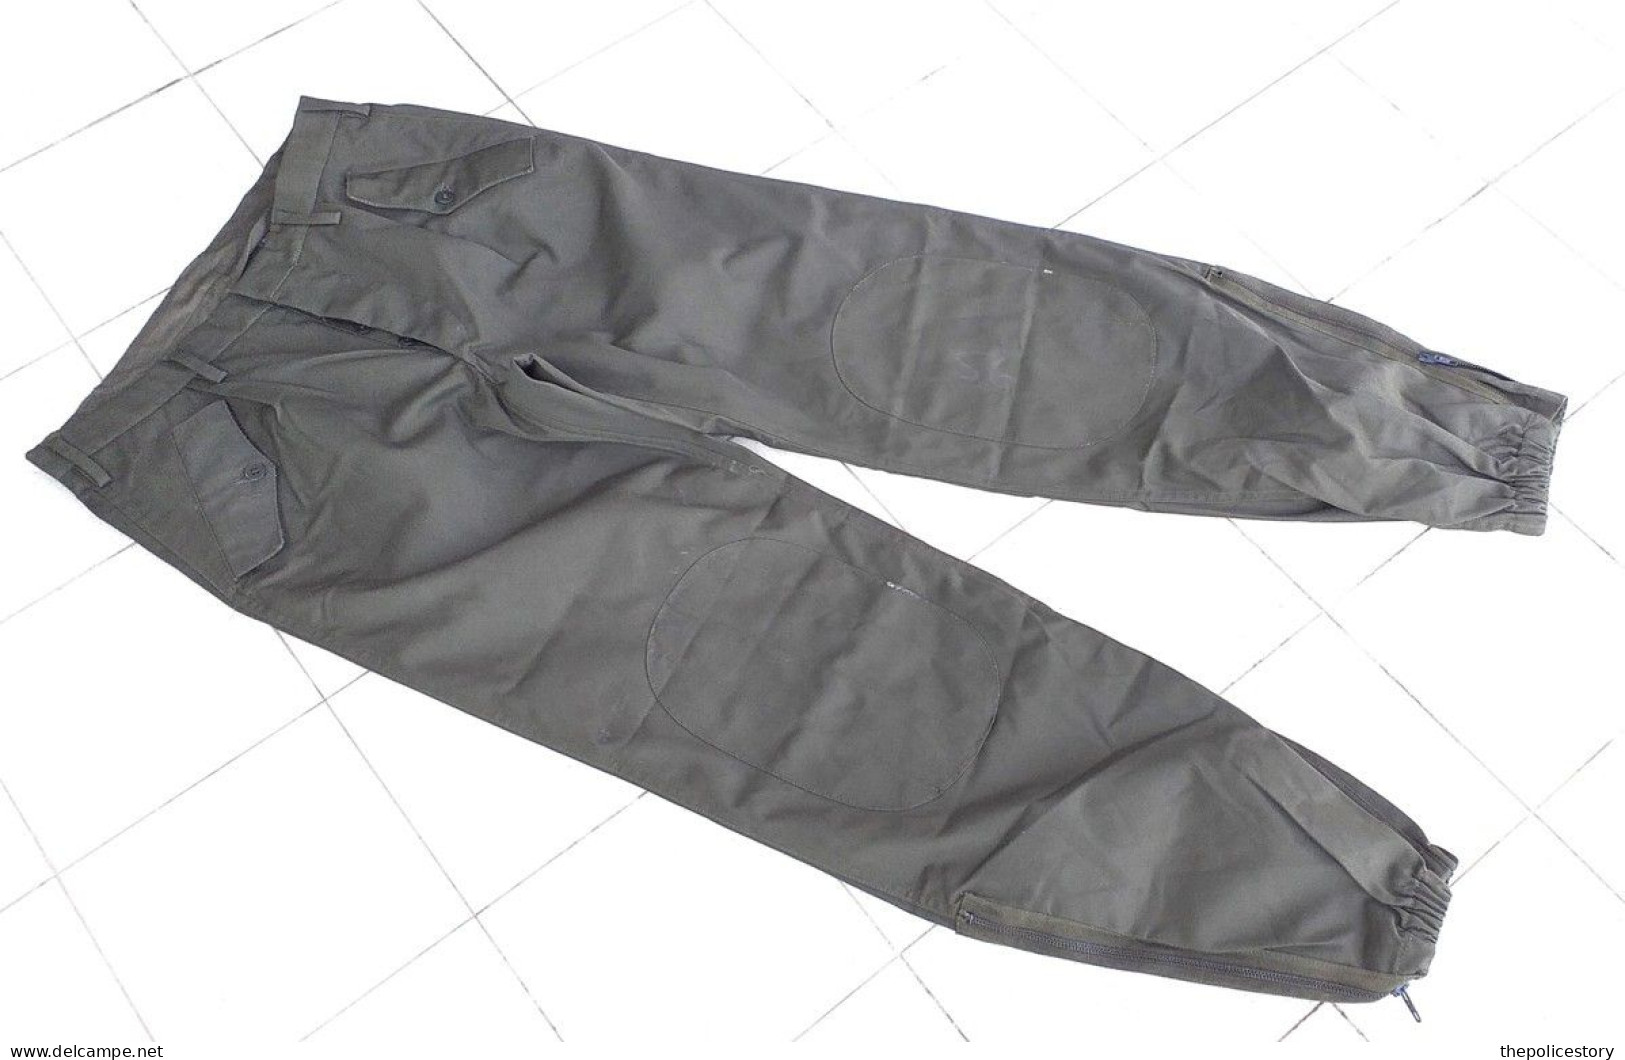 Giacca pantaloni mimetici verdi specifici GDF del 1981 etichettati mai usati